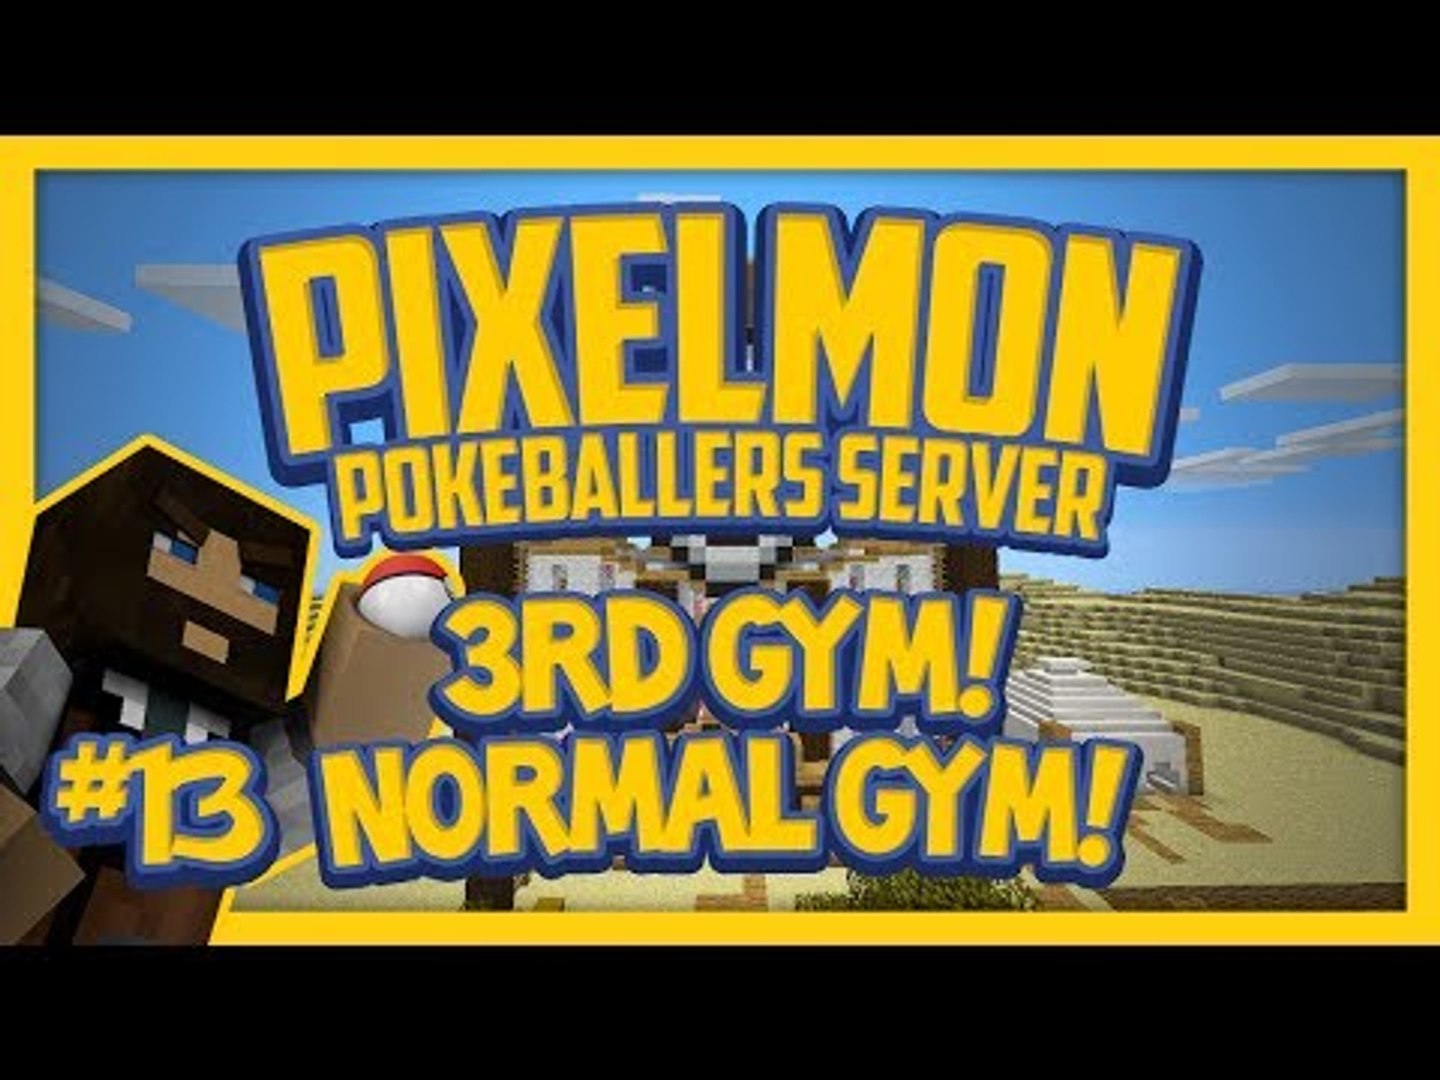 zakdoek Anzai Bakken Pixelmon Server (Minecraft Pokemon Mod) Pokeballers Lets Play Season 2  Ep.13 3rd Gym! Normal Gym! - video Dailymotion